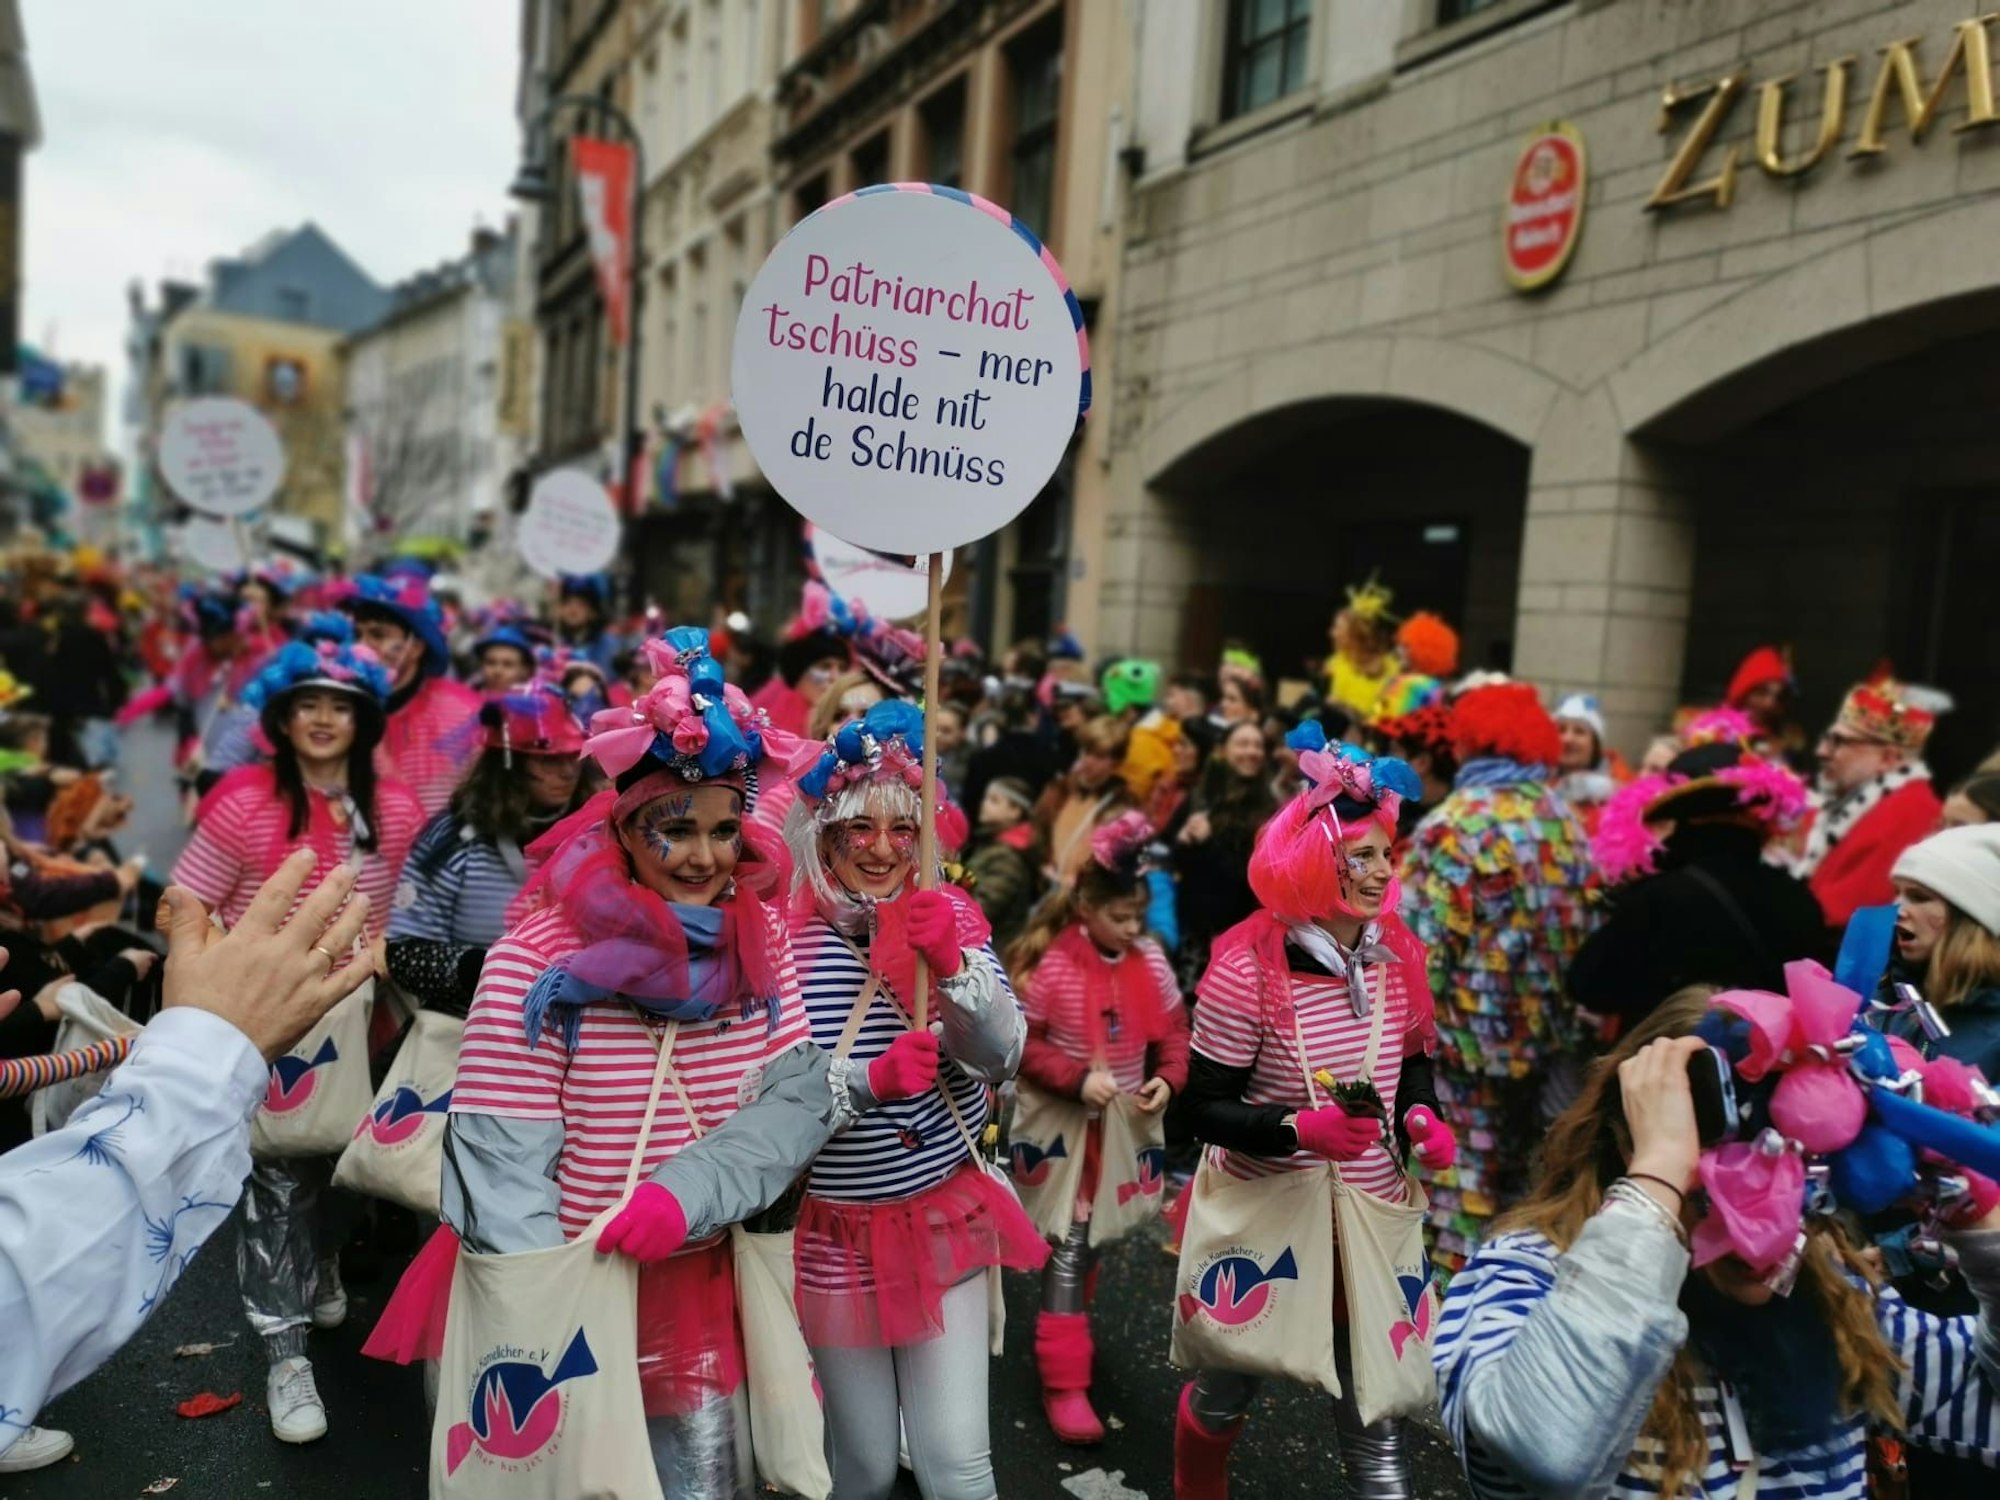 Frauen in Kostümen mit pinken Haaren und rosa Röcken.